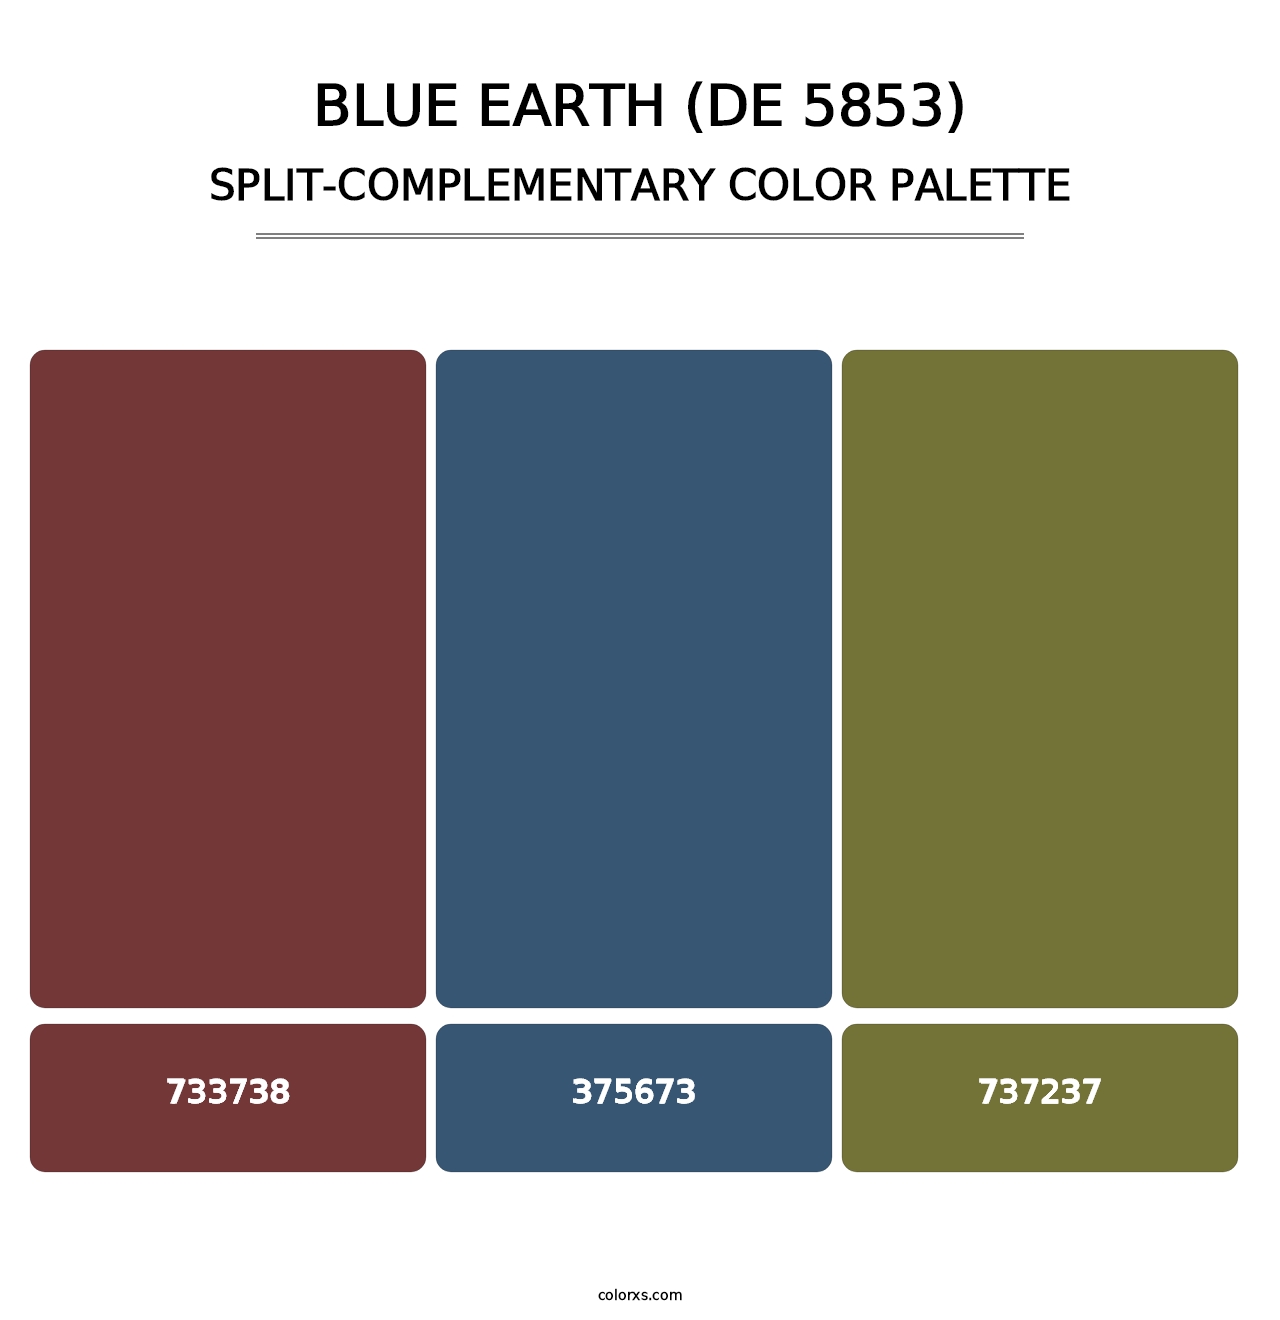 Blue Earth (DE 5853) - Split-Complementary Color Palette